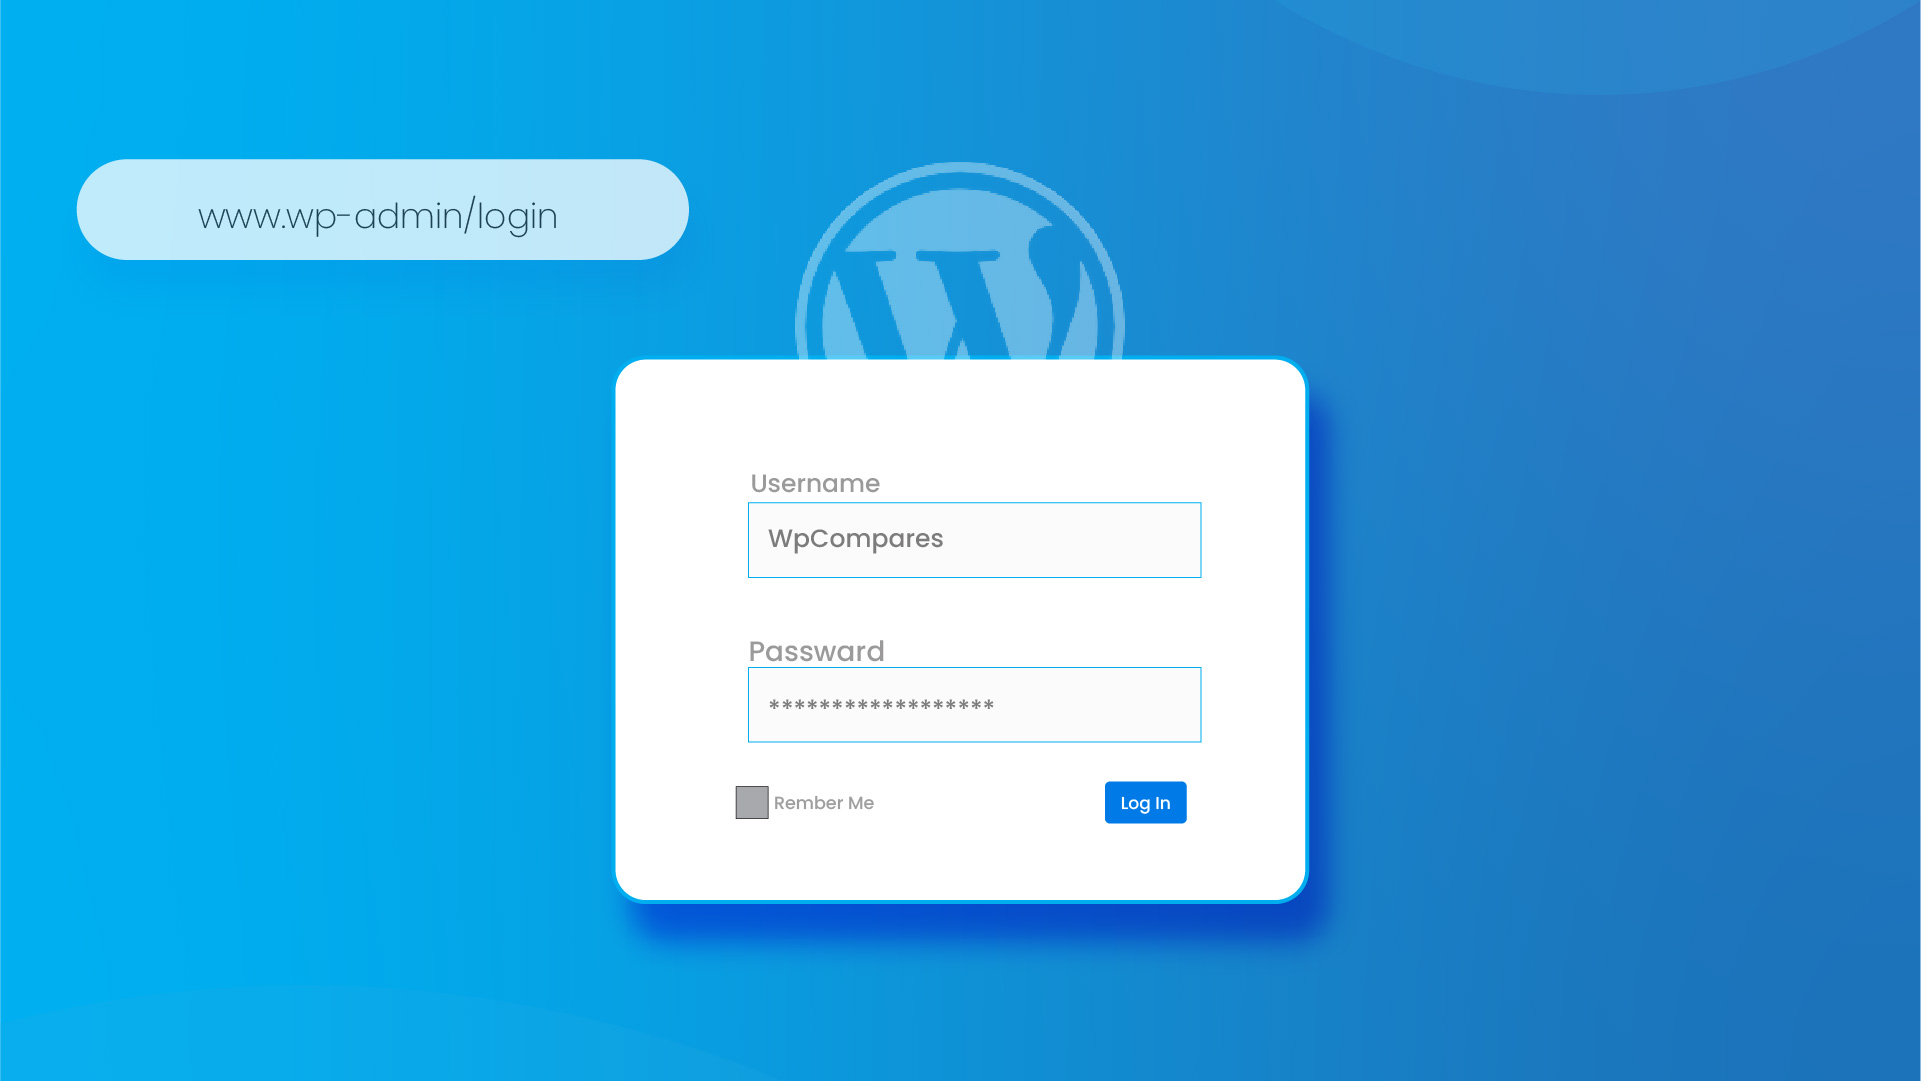 Find Your WordPress Login URL